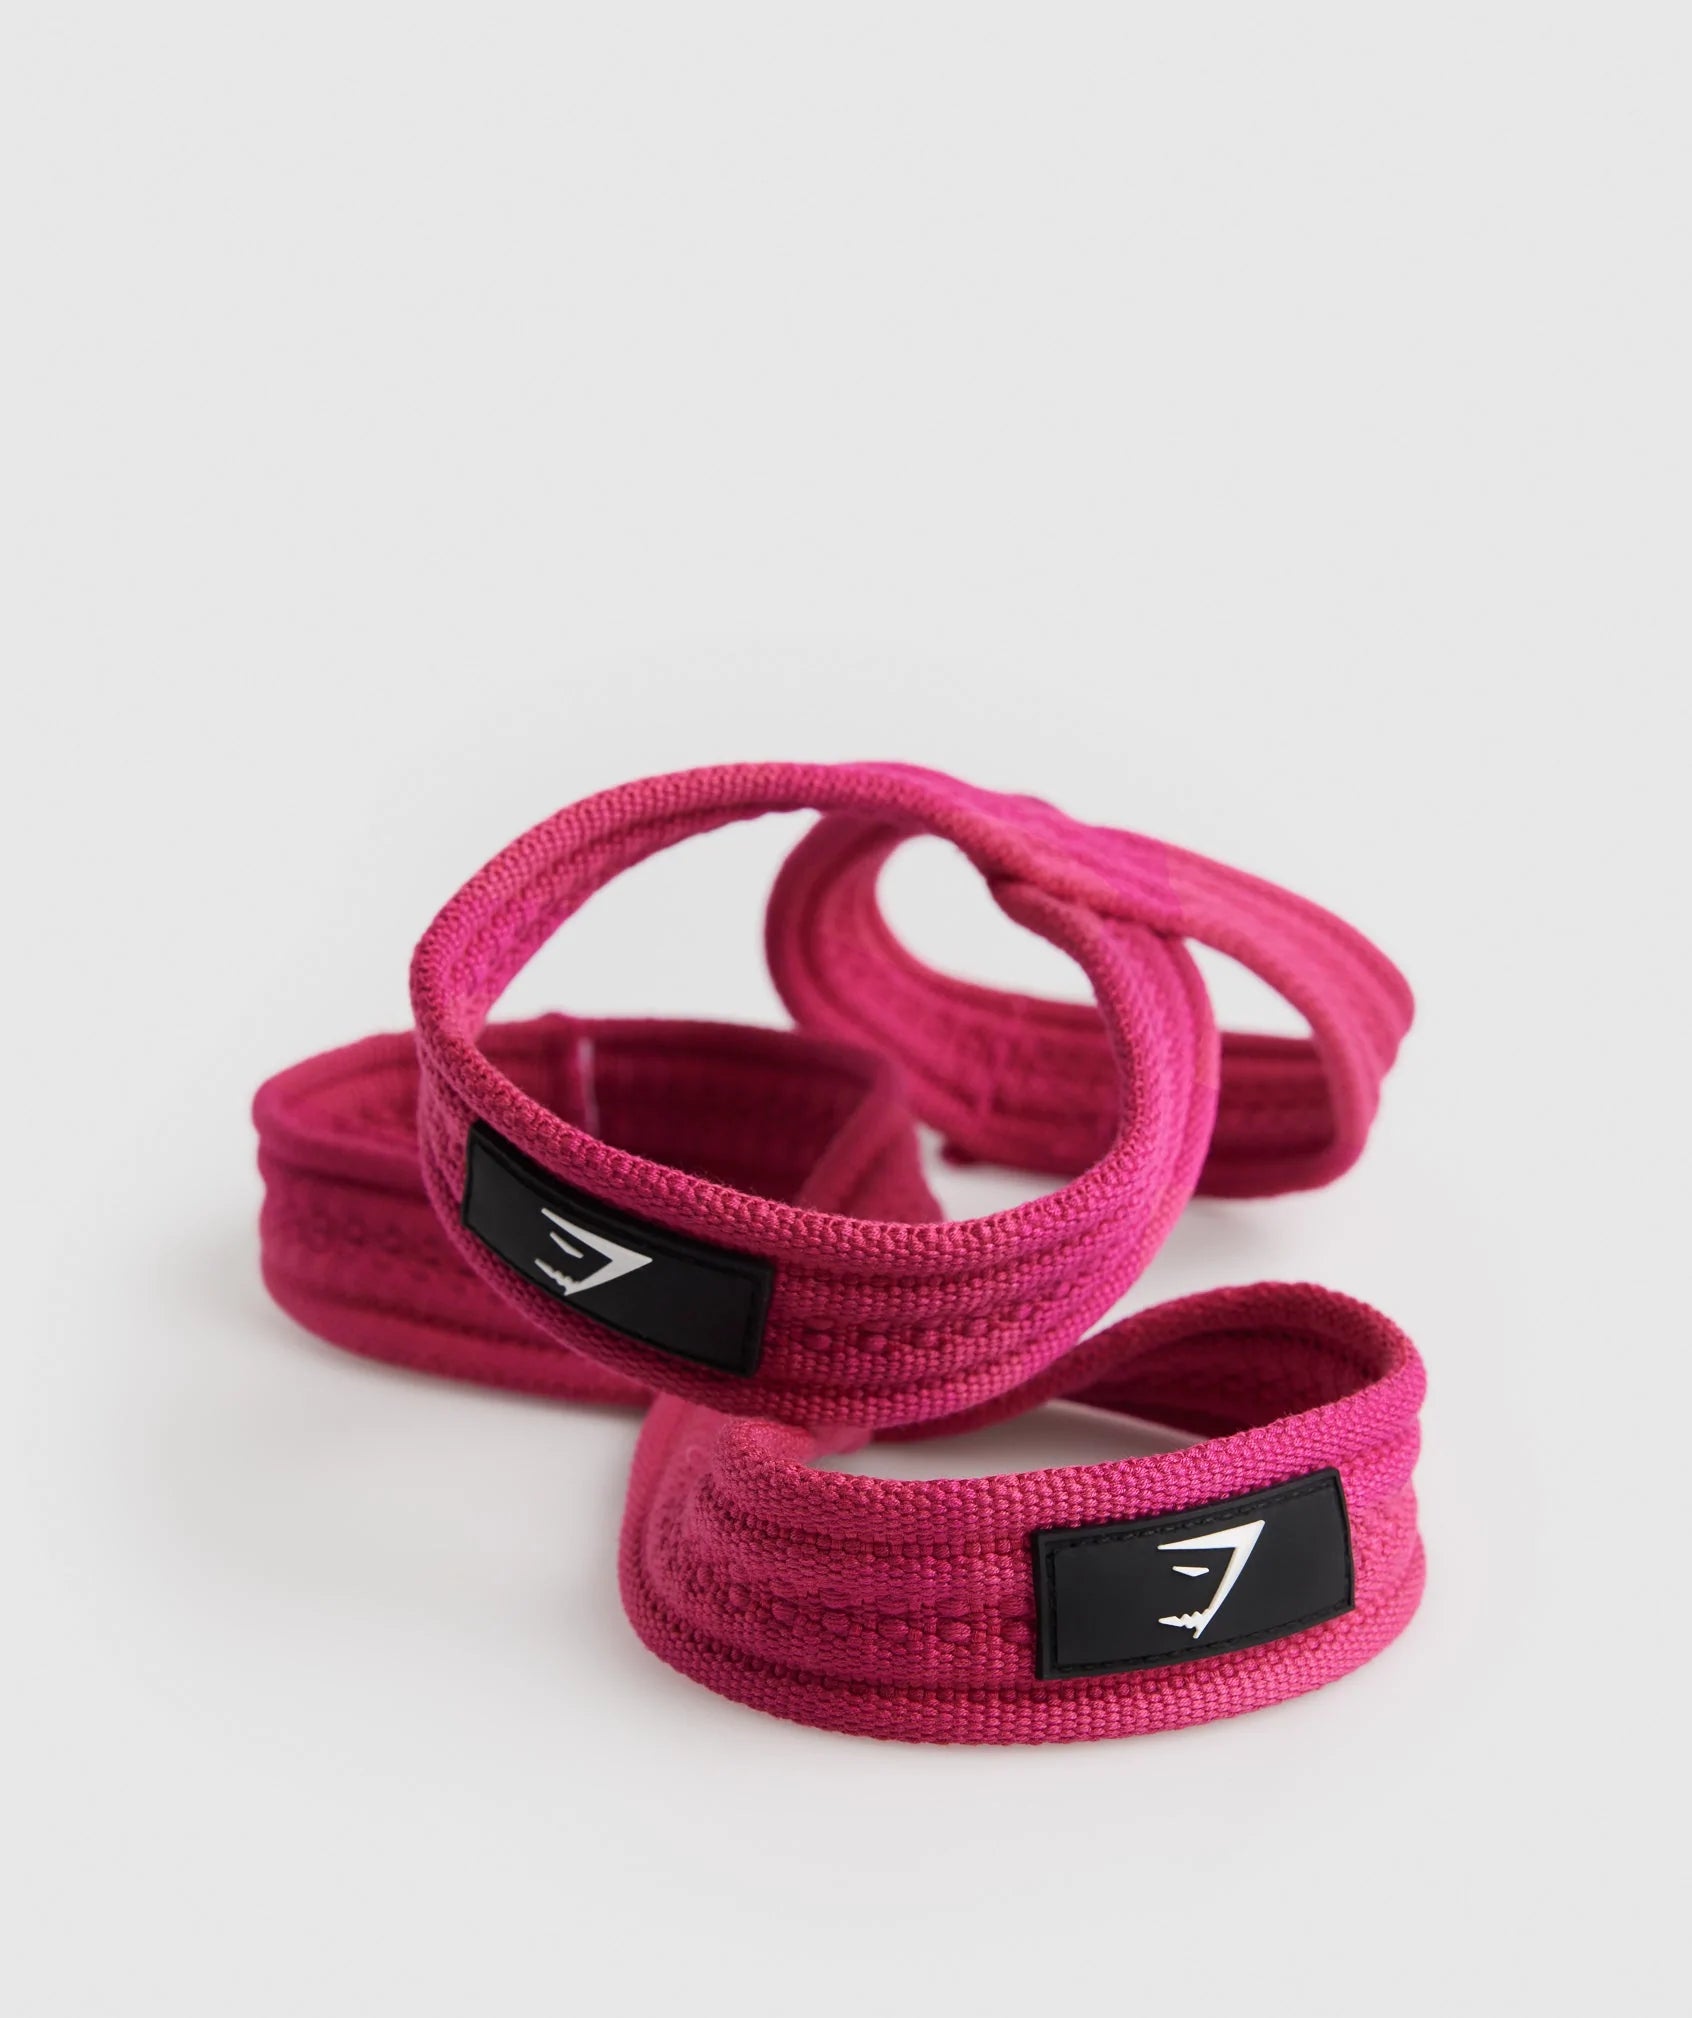 Gymshark Wrist Straps - Magenta Pink